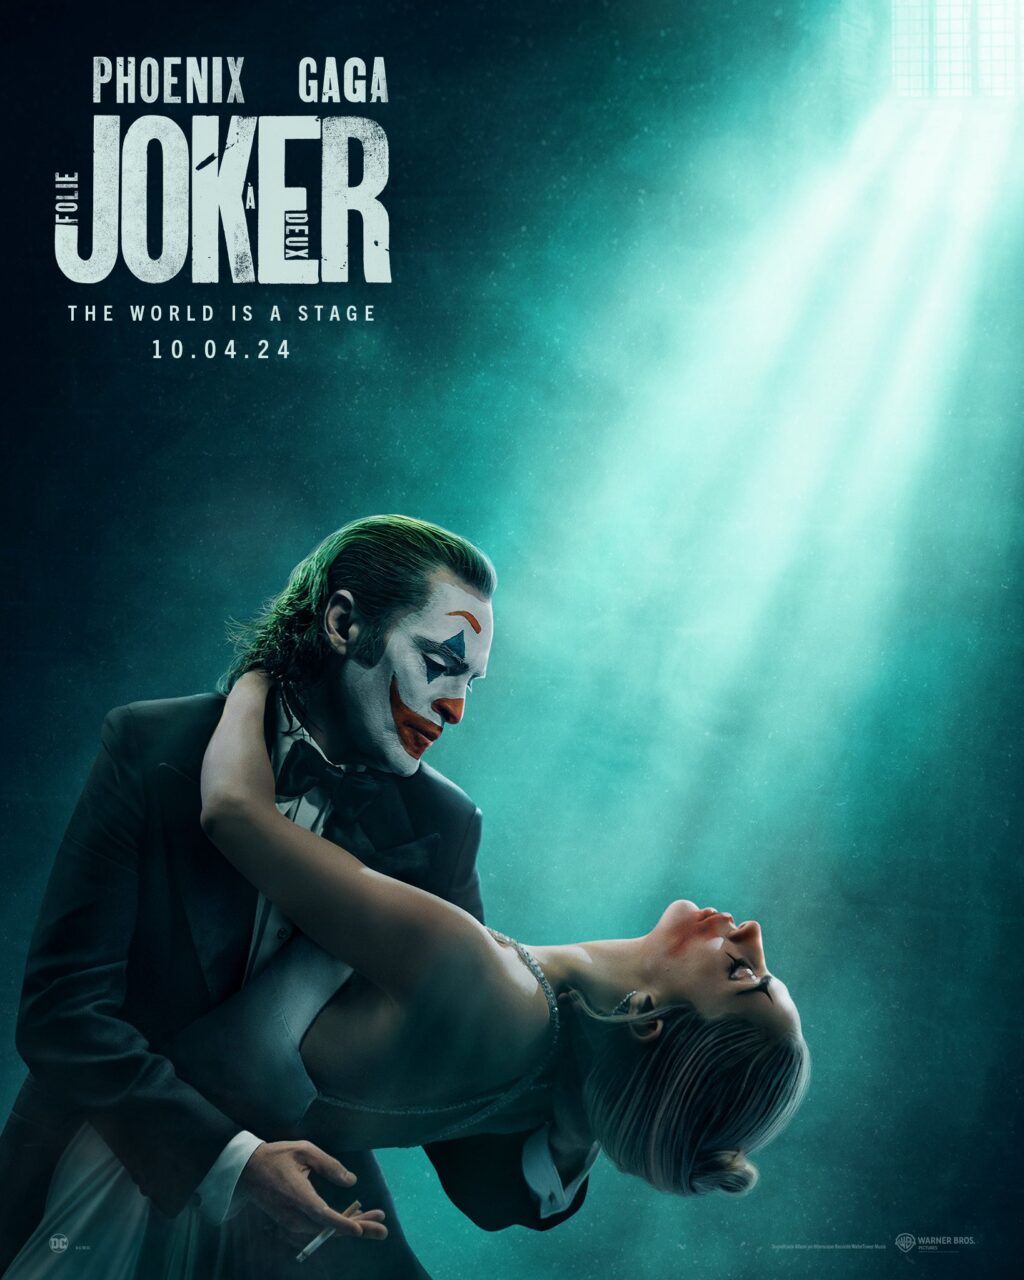 Plakat filmowy przedstawiający mężczyznę charakteryzującego się jako Joker trzymającego w ramionach kobiety wyglądającej na nieprzytomną, obydwoje w eleganckich strojach, na tle zielonego światła i promieni słonecznych przebijających się przez okno w górnej części kadru. Na plakacie znajdują się napisy "PHOENIX GAGA JOKER", "THE WORLD IS A STAGE" oraz data "10.04.24".